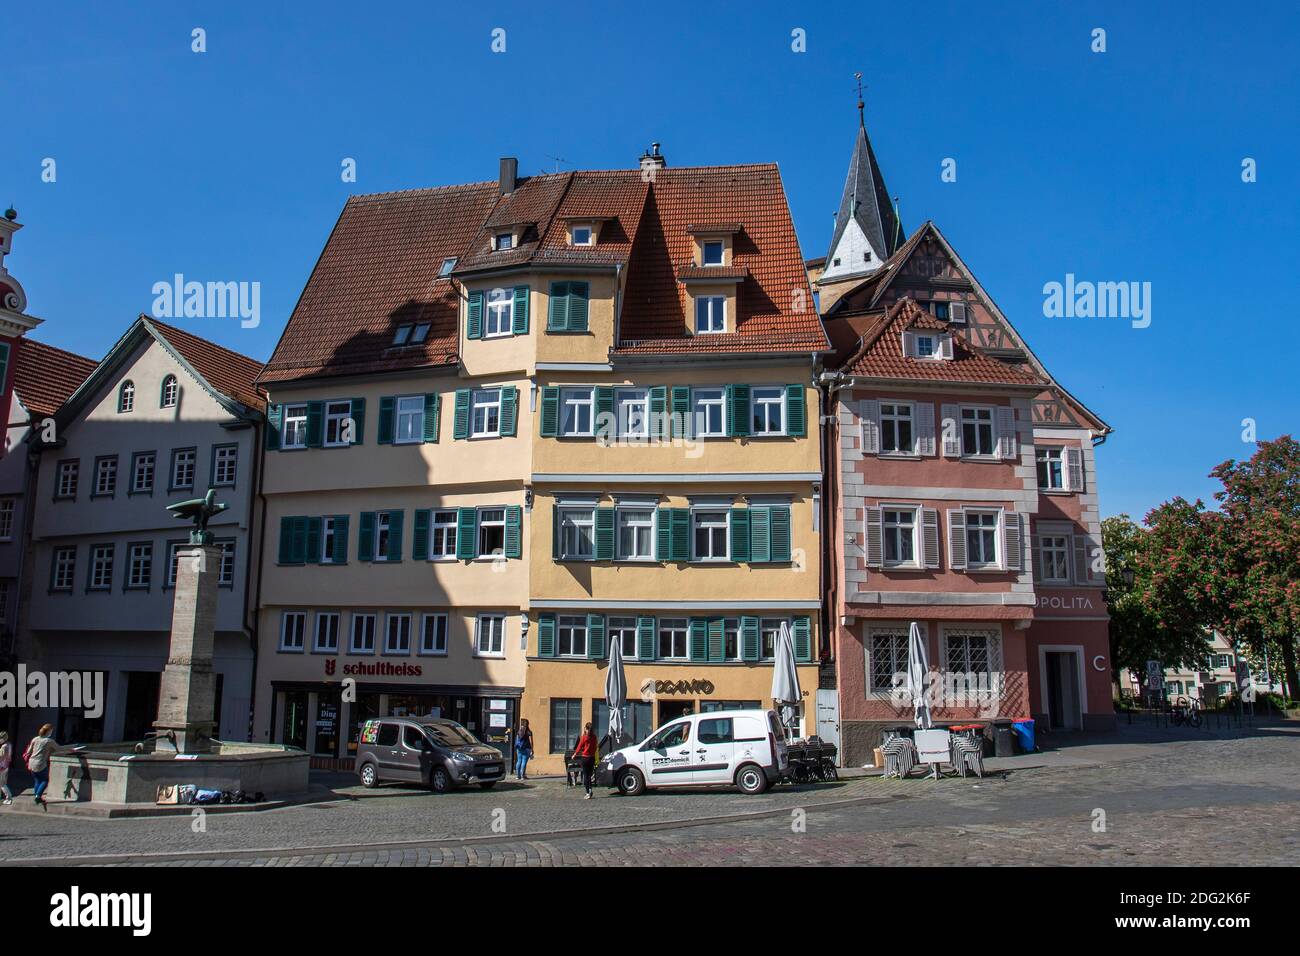 Esslingen am Neckar, Fachwerkhäuser am Rathausplatz Foto Stock